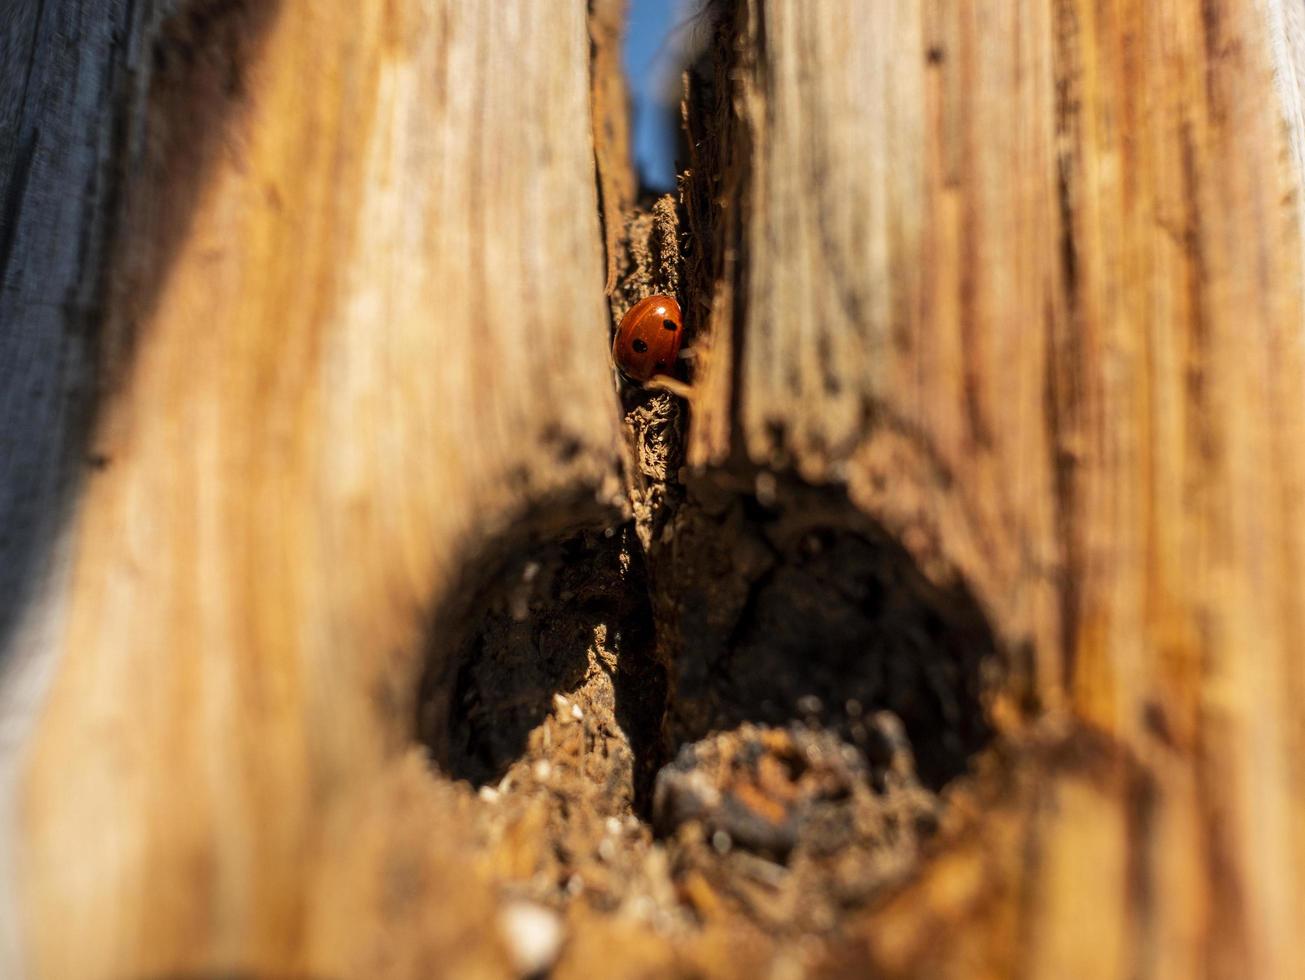 lieveheersbeestje in een droge houten boomstam foto